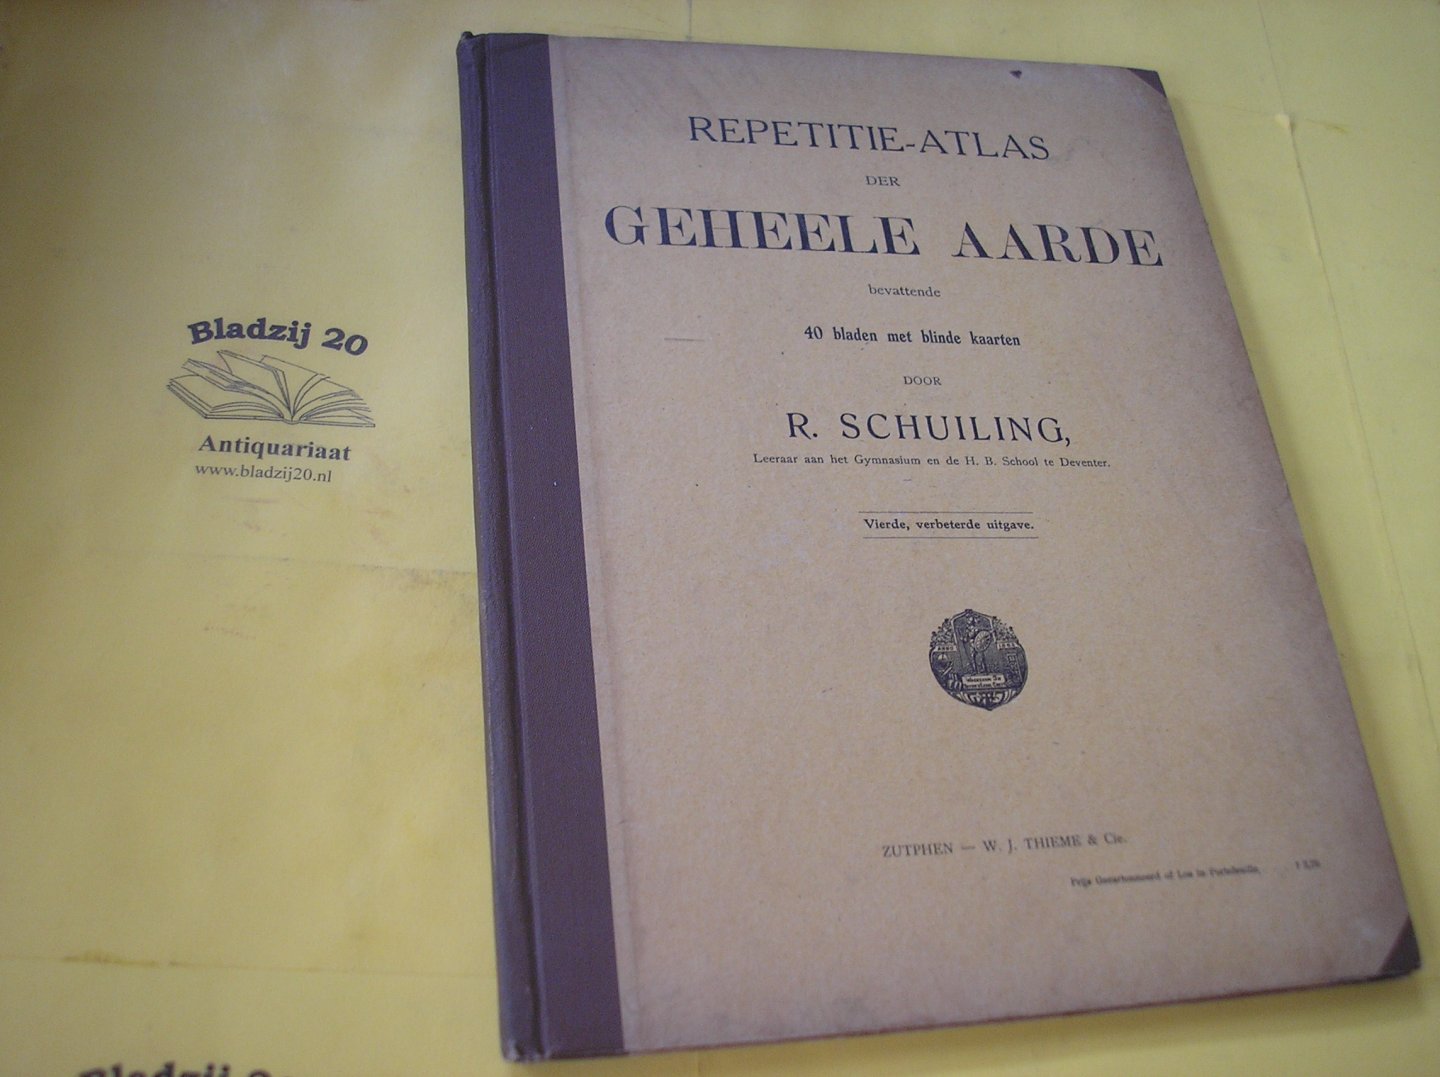 Schuiling, R. - Repetitie-atlas der geheele aarde bevattende 40 bladen met blinde kaarten.